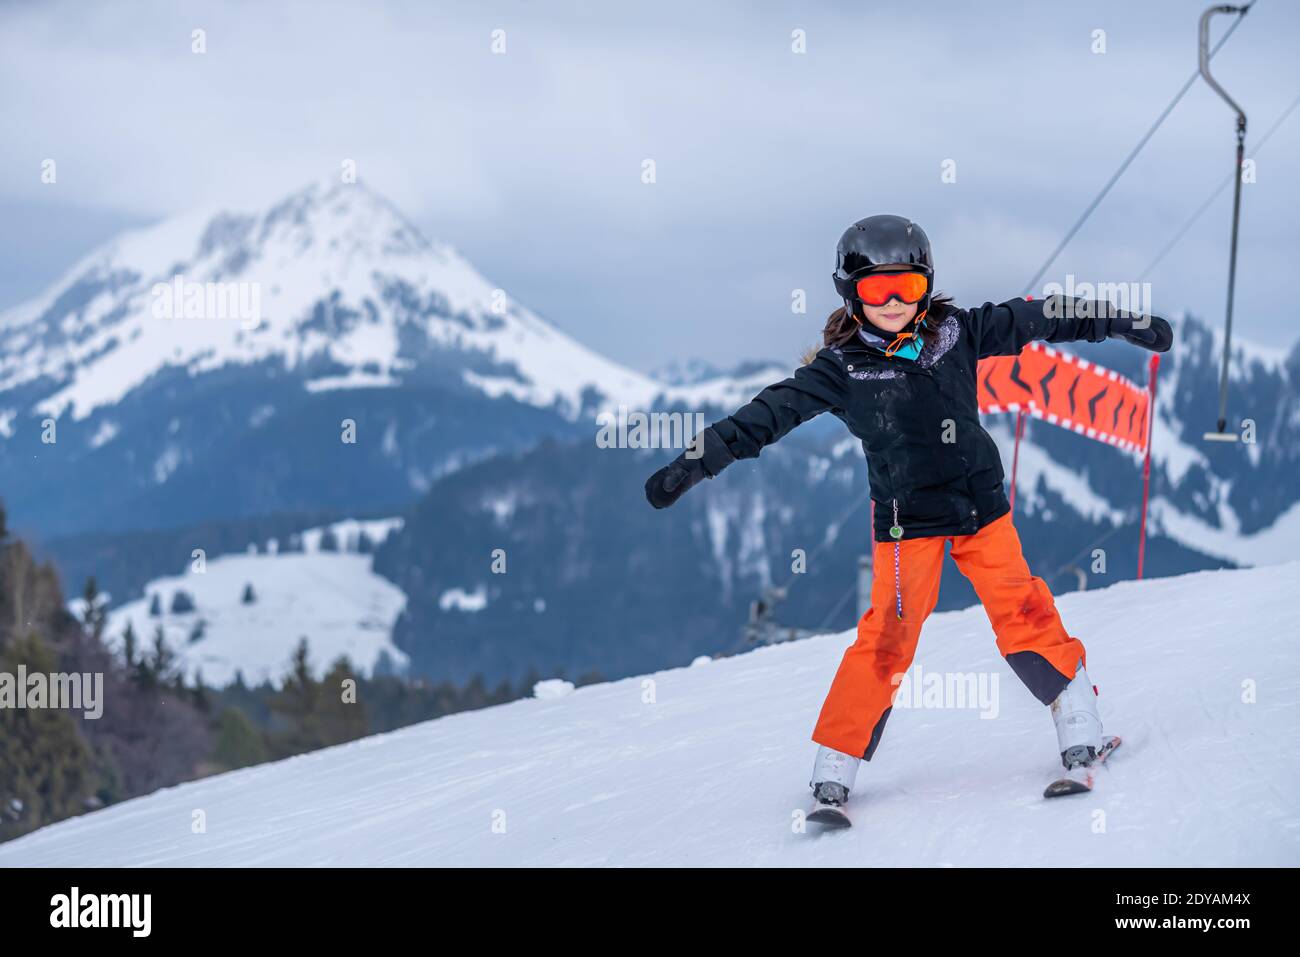 Skifahren im Schnee. Ein asiatisches Mädchen, das auf dem Skilift sitzt, indem es das Seil ergreifet und Skistöcke hält. Urlaub in der Schweiz. Frohe Kindheit. Stockfoto